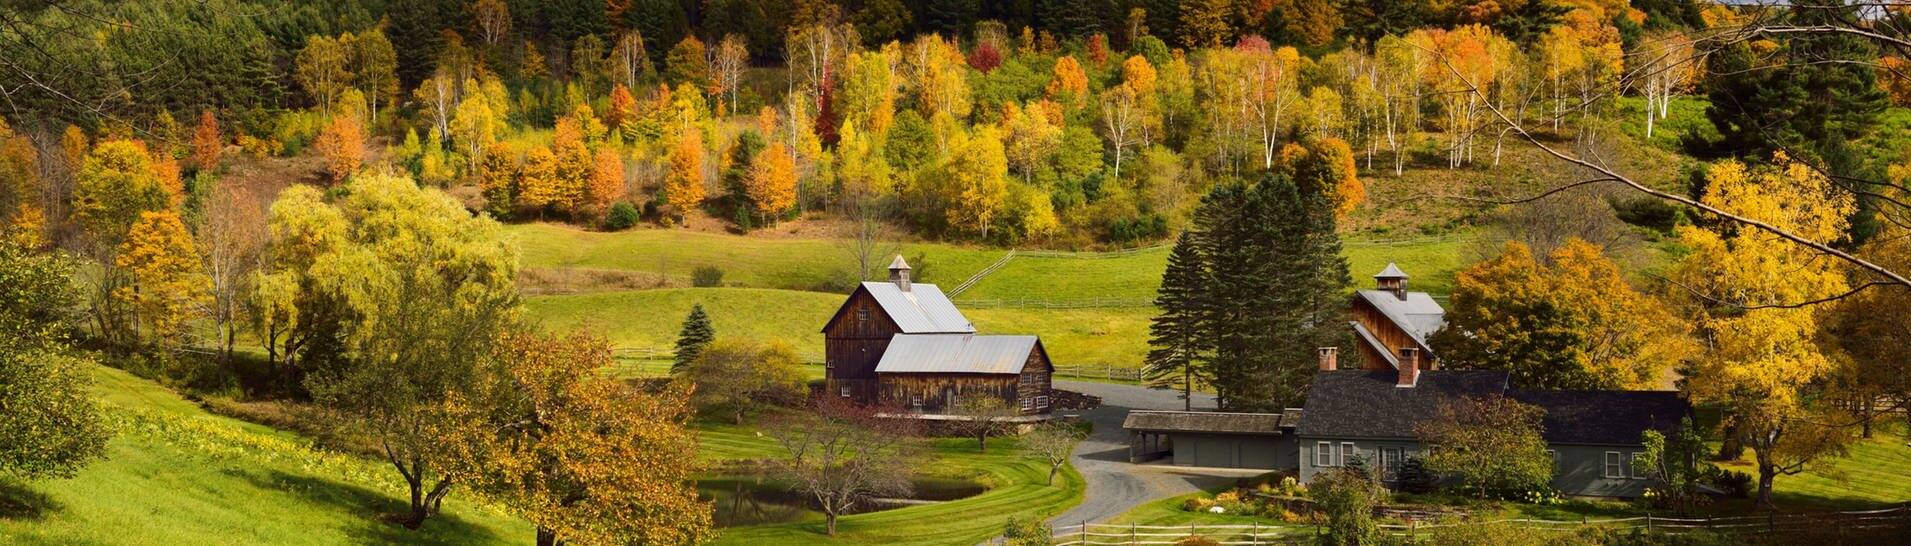 Kleine, idyllische Farm zwischen Wiesen und Bäumen in der ländliche Gemeinde Pomfret im US-Bundesstaat Vermont (Foto: IMAGO, IMAGO / Pond5 Images)